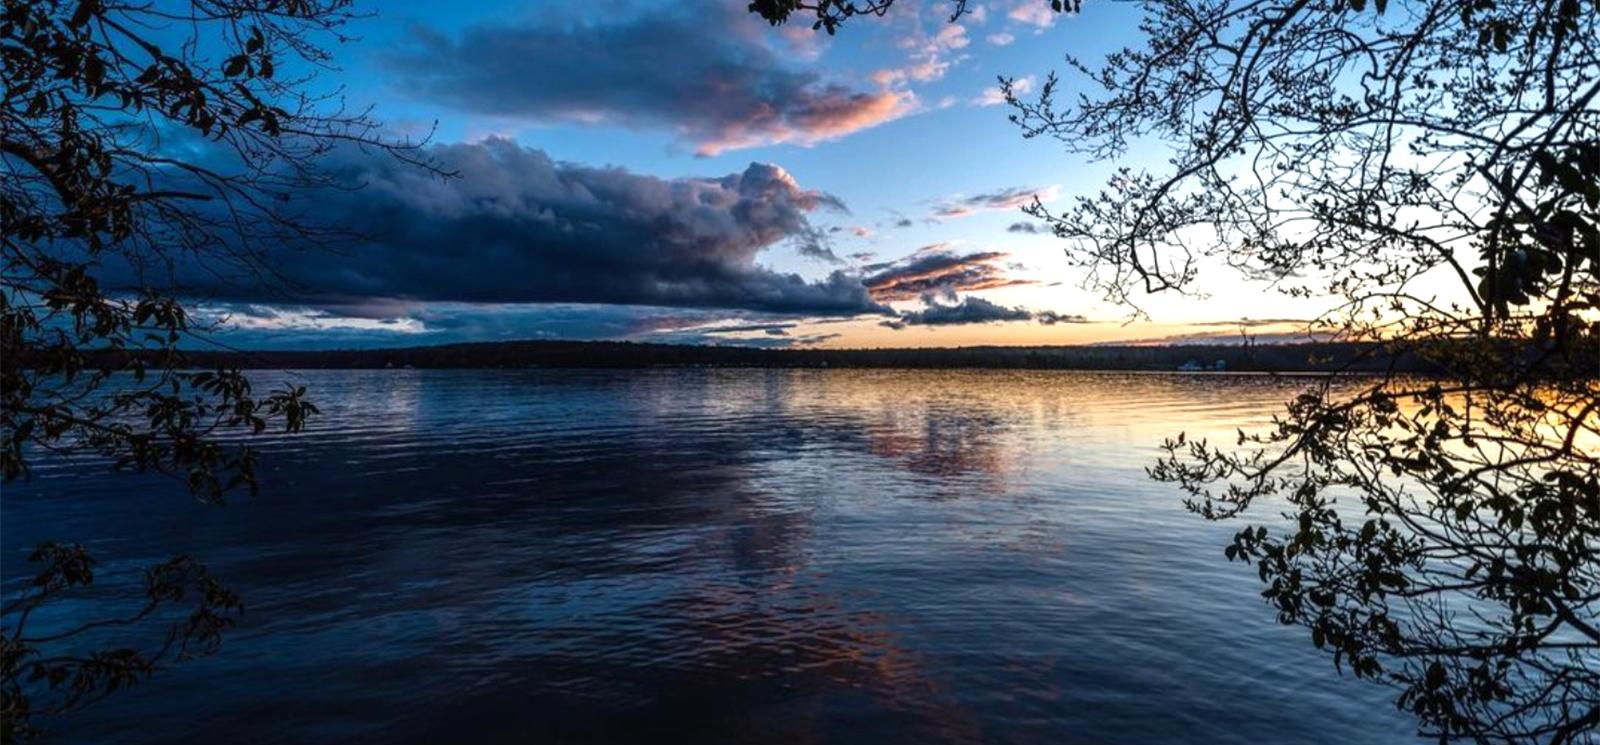 Noche en el lago Gardner (Instagram@kylescheiper)